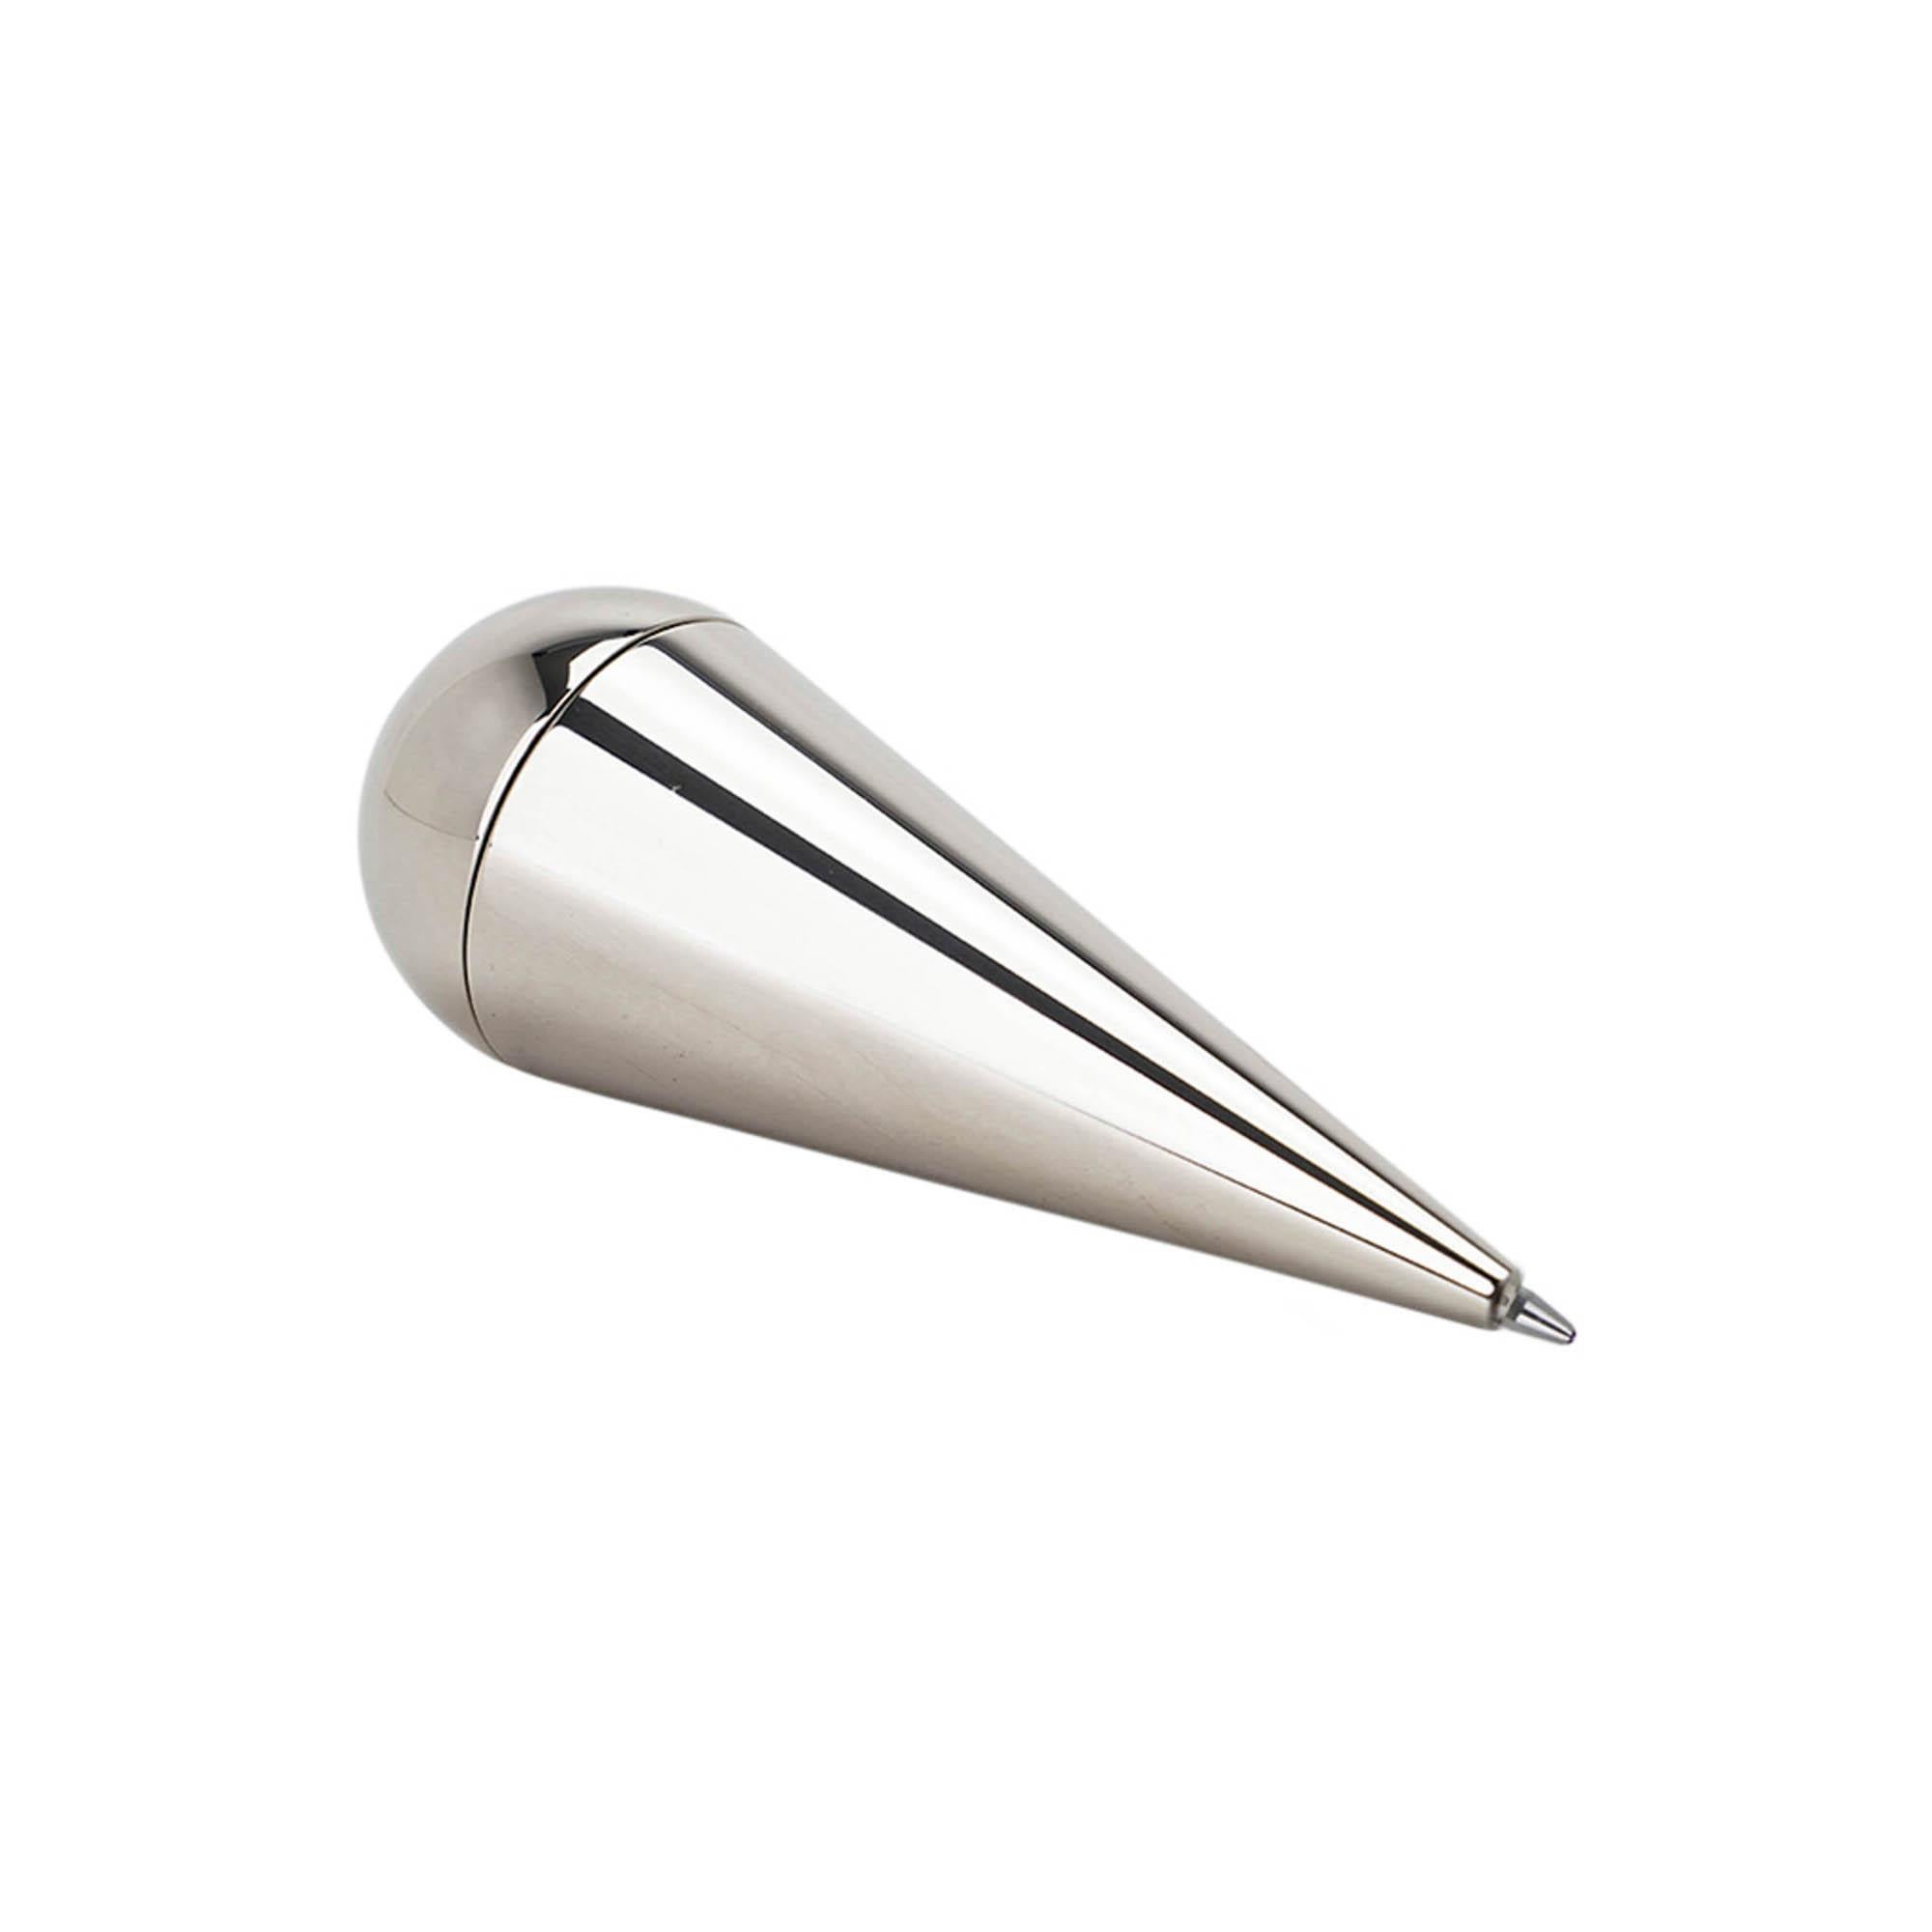 Mightychic bietet einen Hermes Culbuto Sellier Rollerball Pen in der Farbe Fauve an.
Barenia-Kalbsleder.
Palladium beschichtet.
Verfügt über eine spezielle blaue Drucktintenmine.
Ein wunderbarer, selbstbalancierender Schreibtischstift, der immer auf